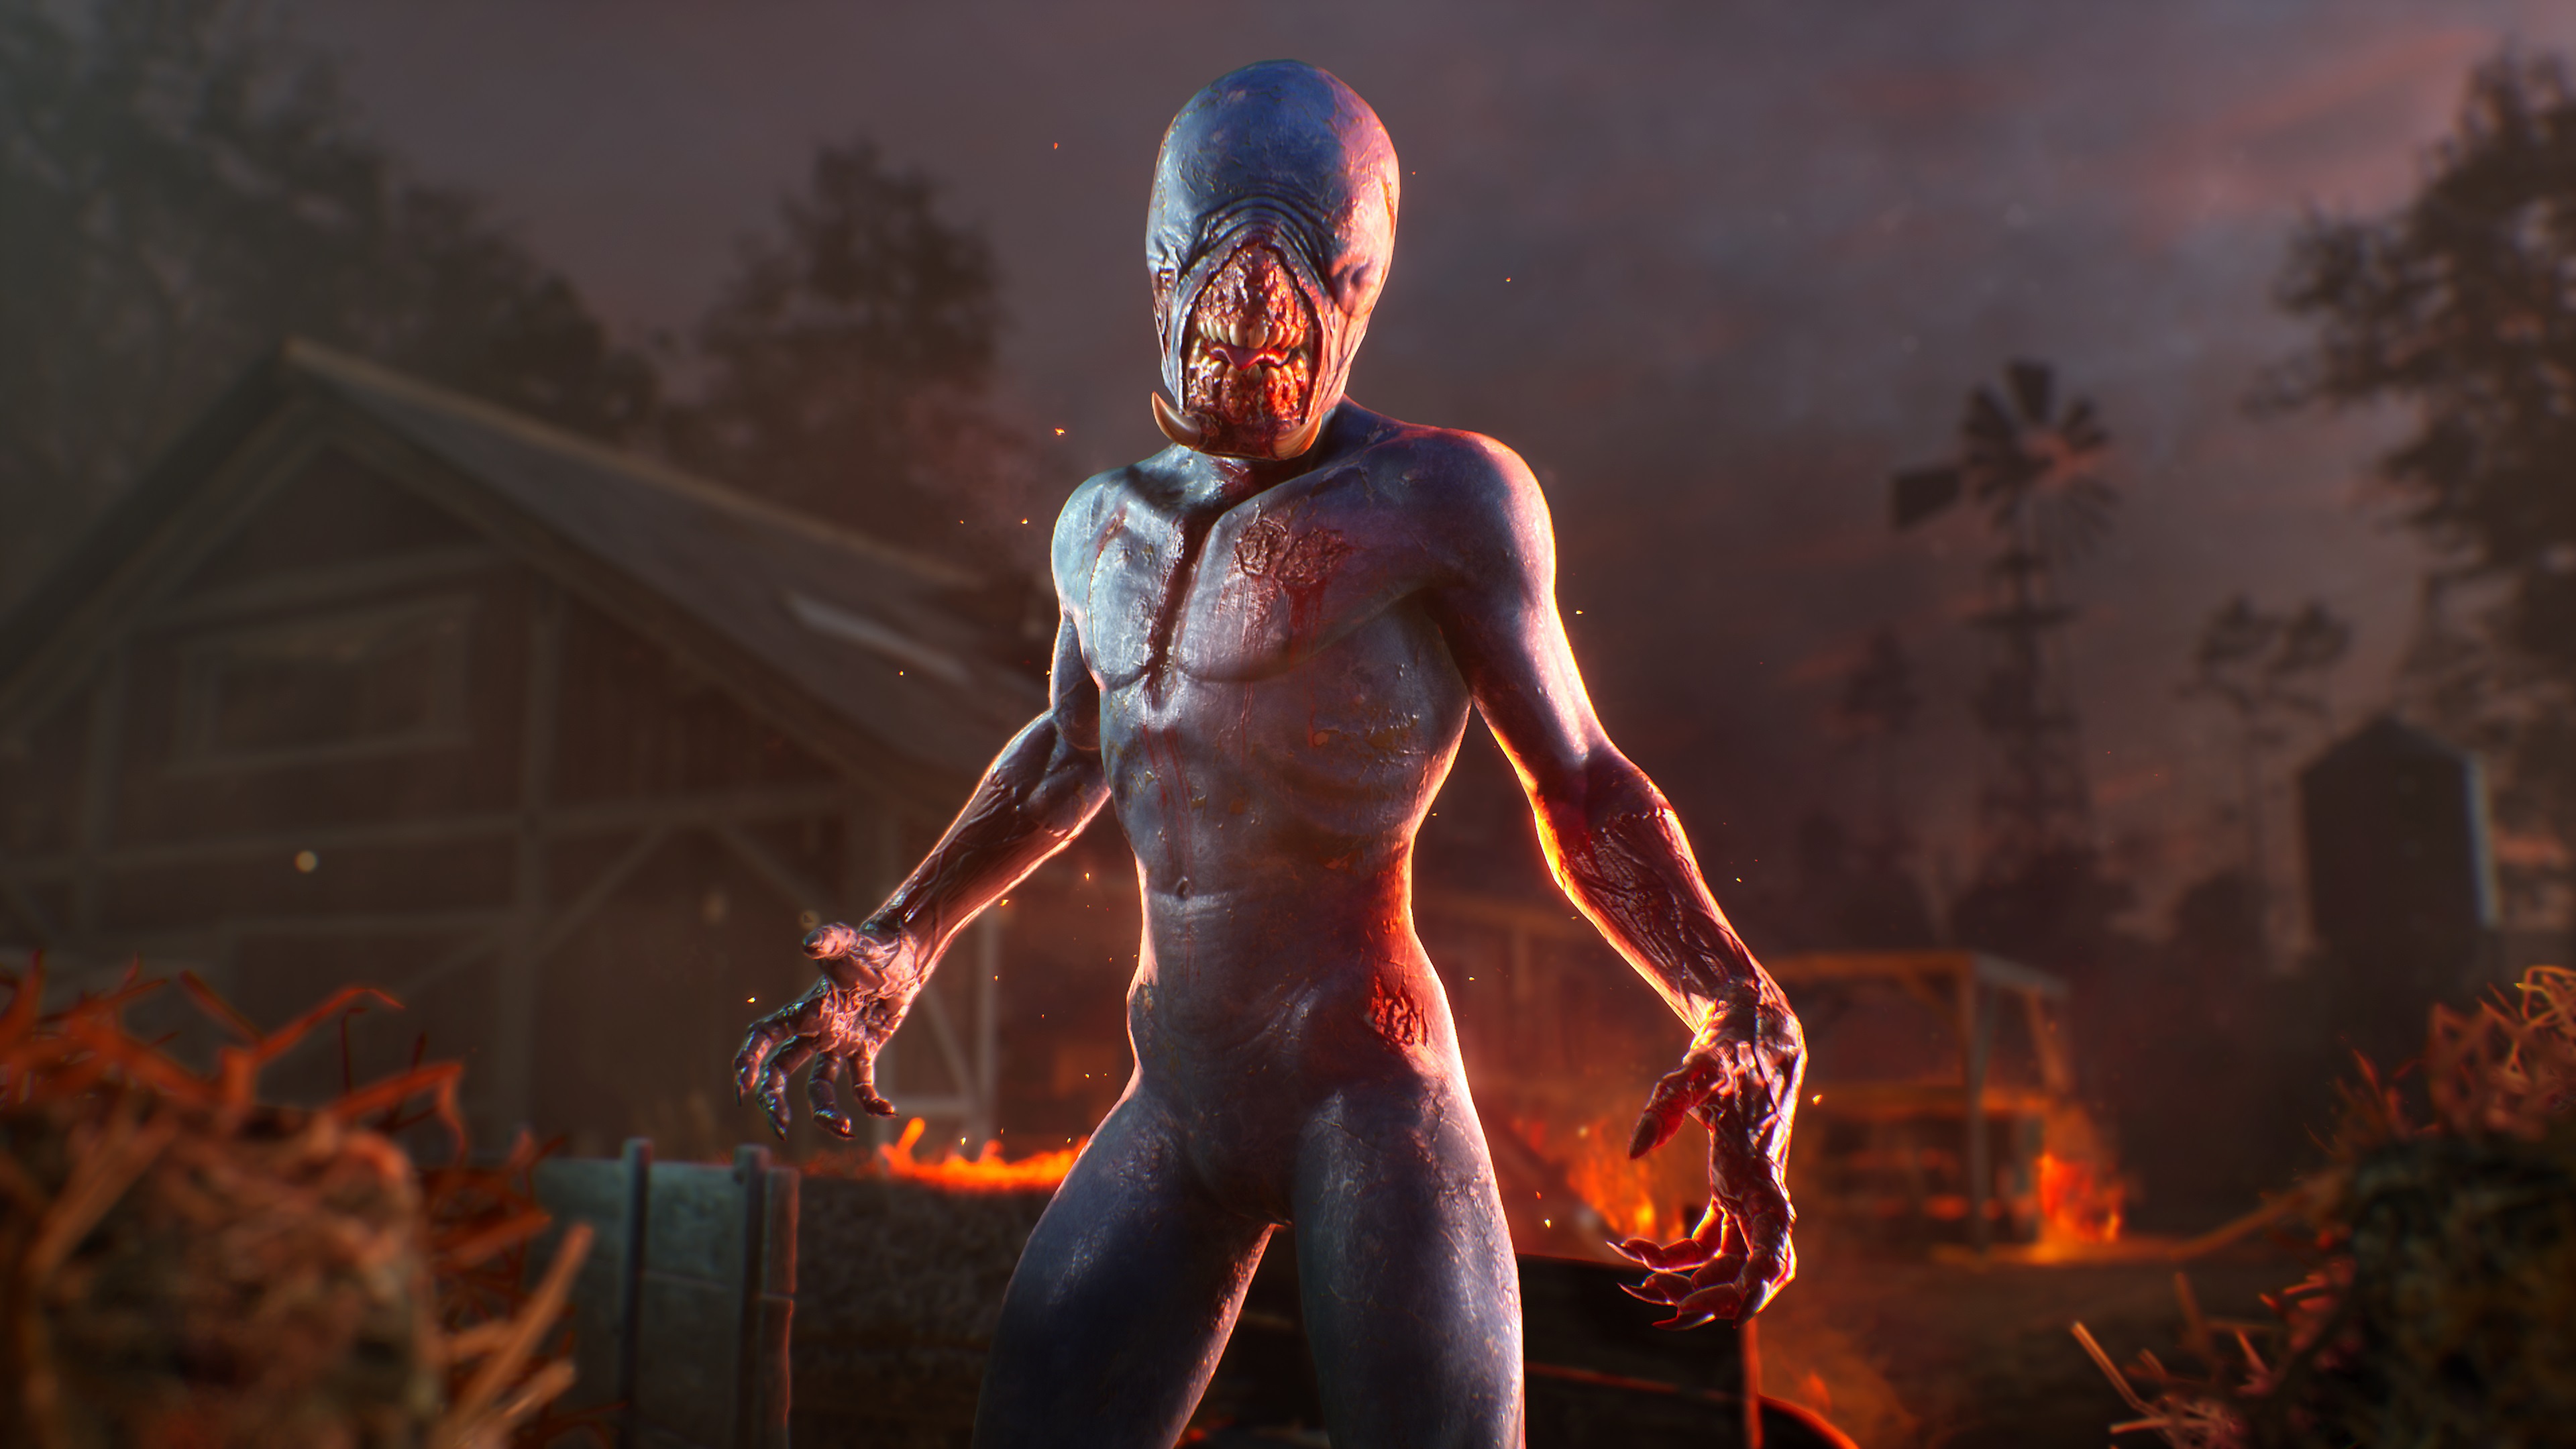 Evil Dead: The Game – snímek obrazovky s postavou připomínající příšeru